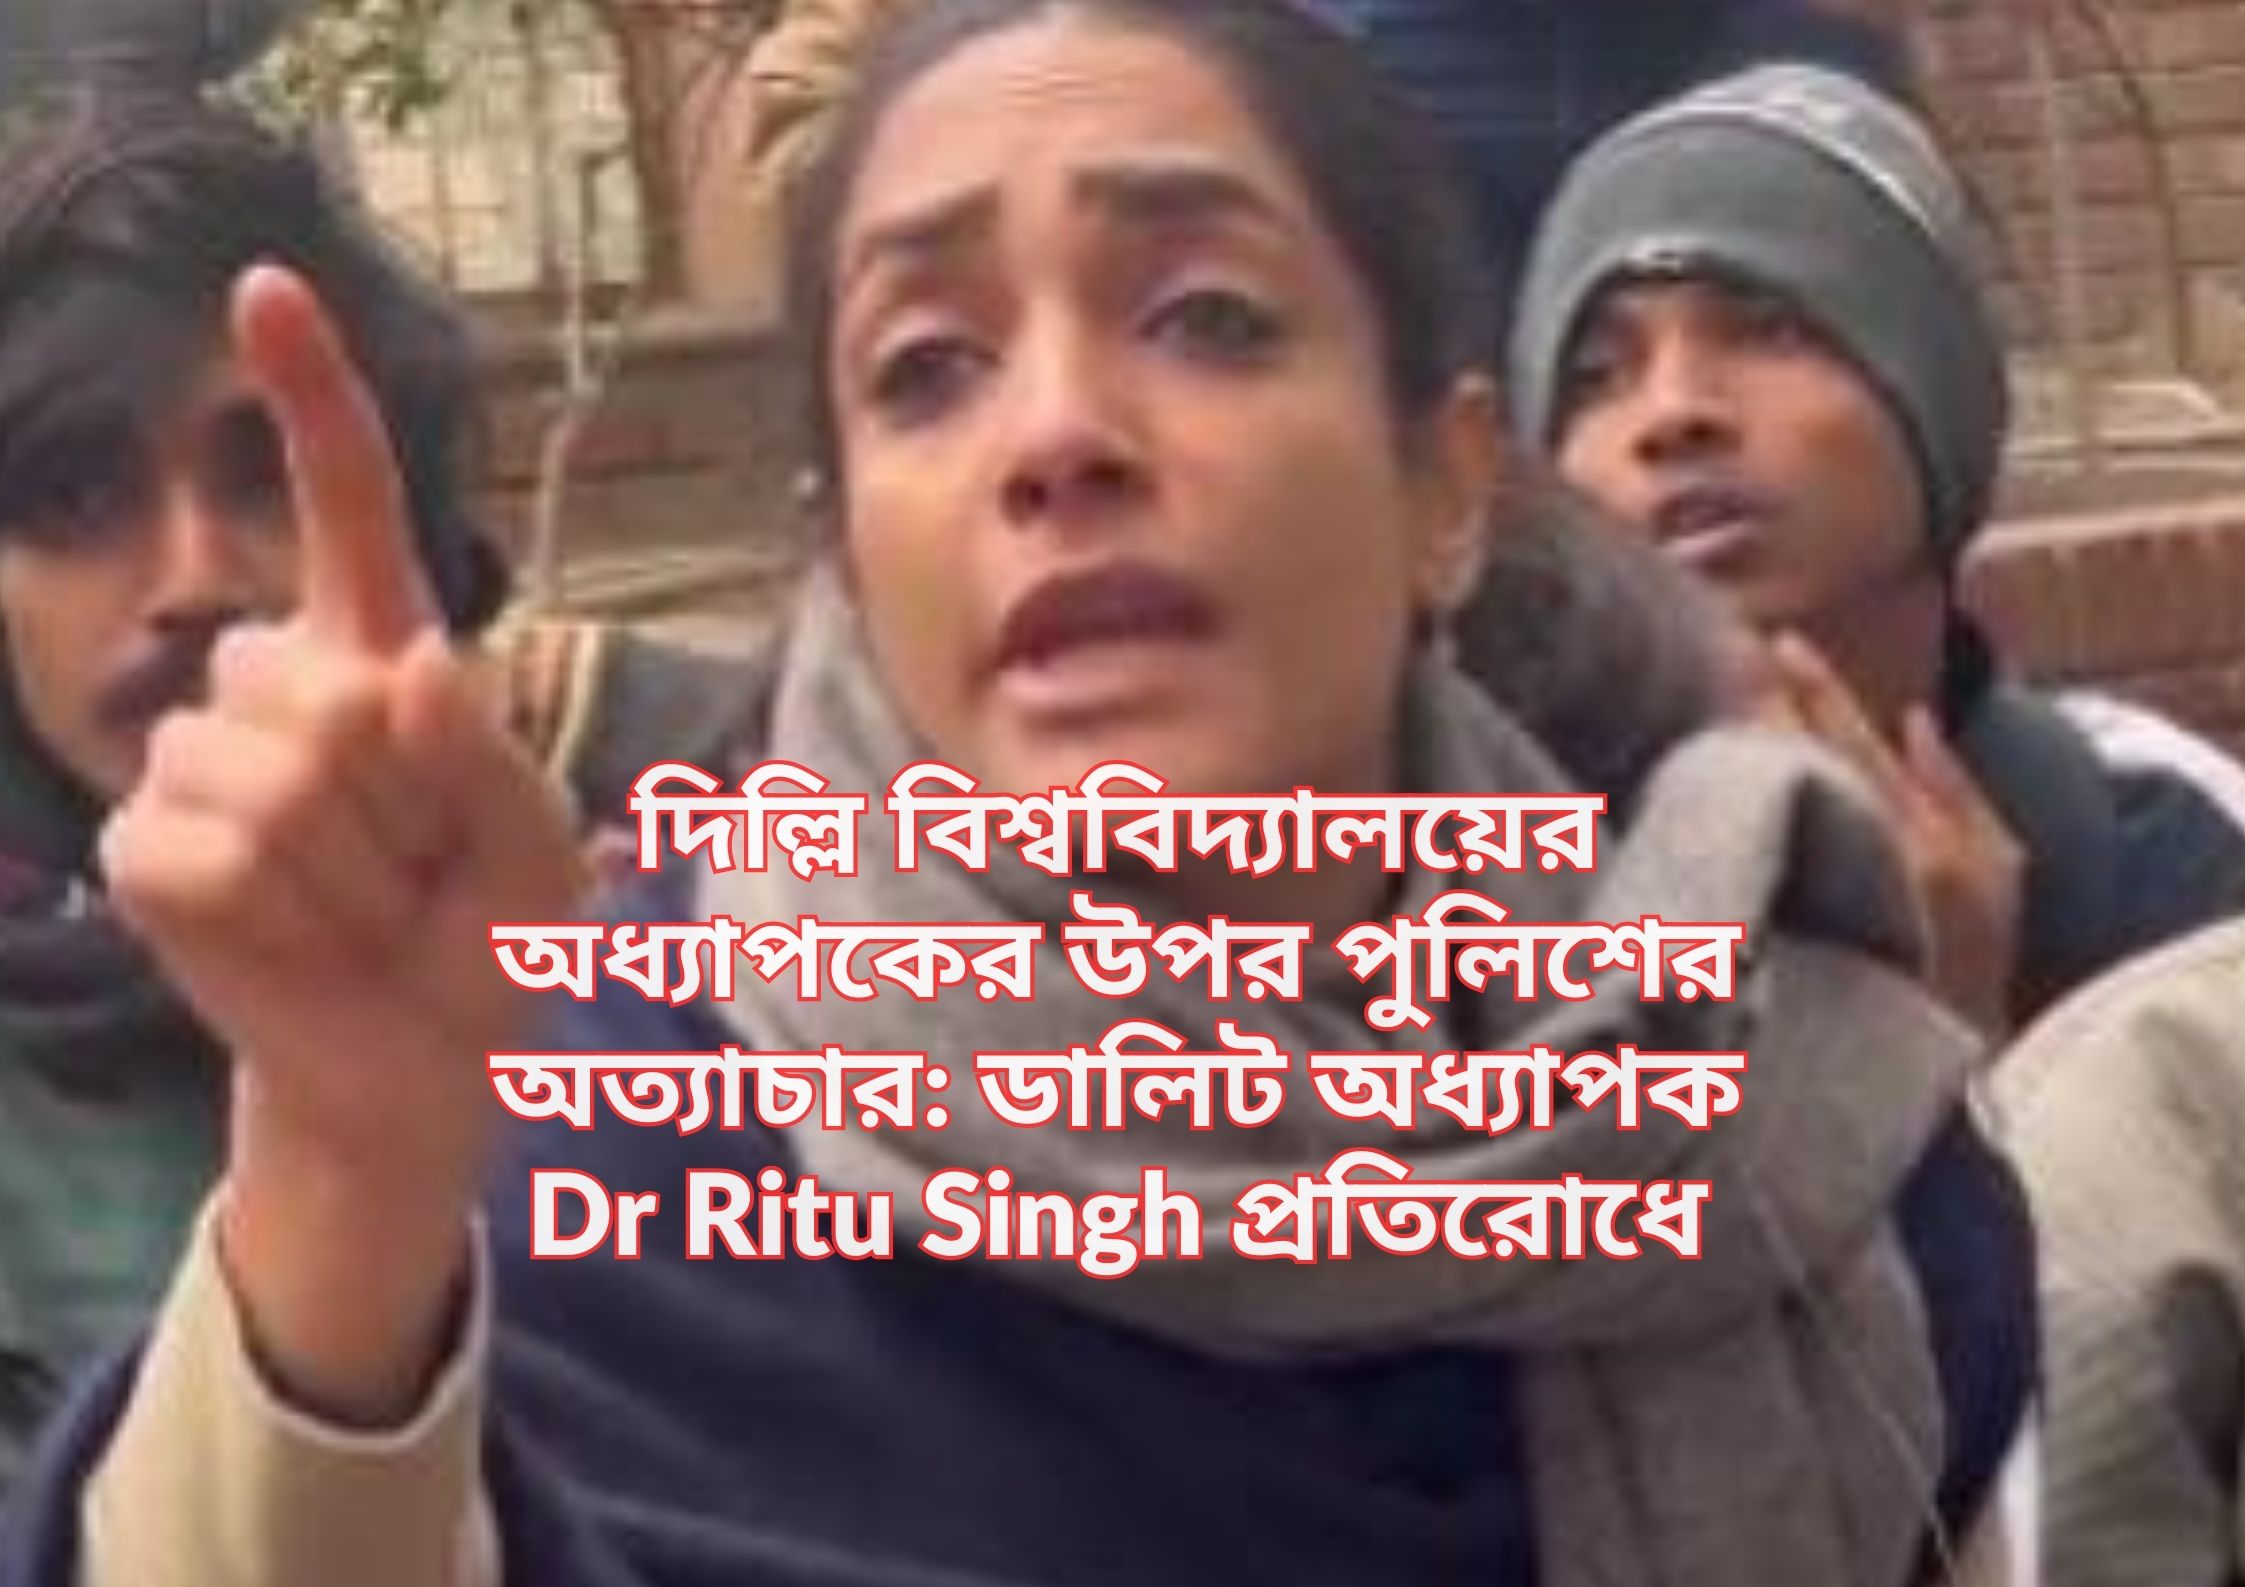 দিল্লি বিশ্ববিদ্যালয়ের অধ্যাপকের উপর পুলিশের অত্যাচার: ডালিট অধ্যাপক Dr Ritu Singh প্রতিরোধে